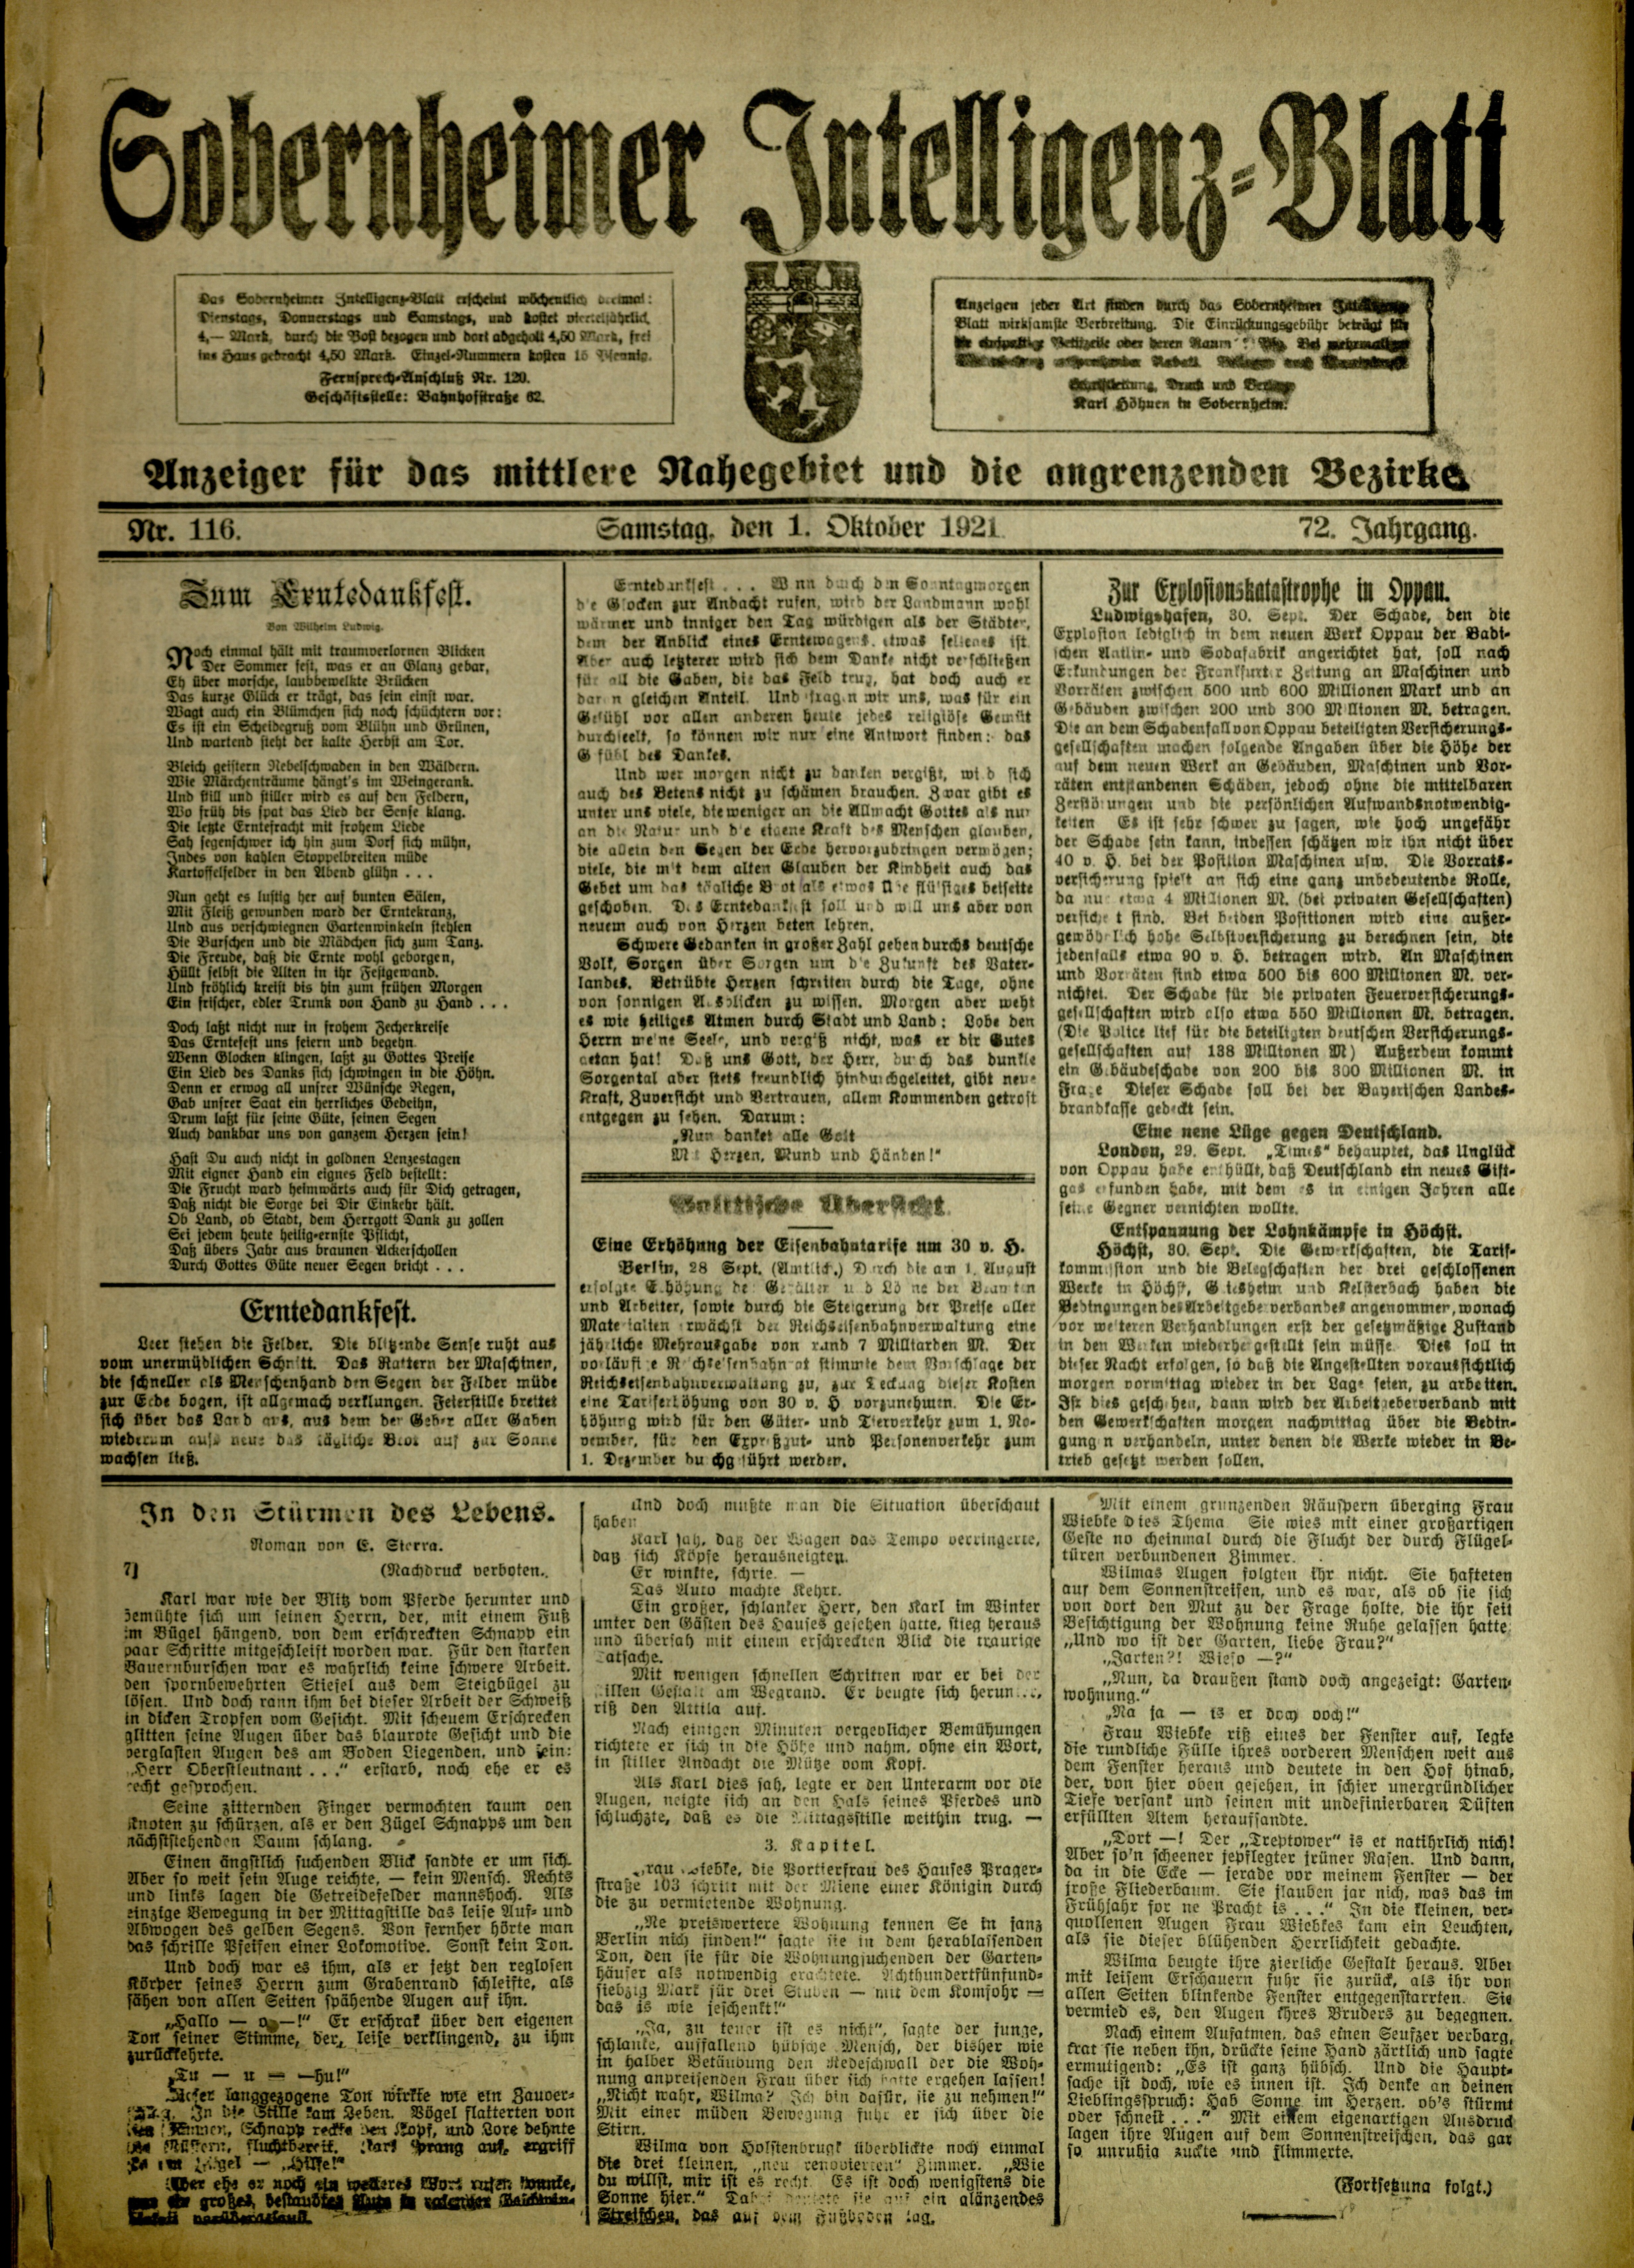 Zeitung: Sobernheimer Intelligenzblatt; Oktober 1921, Jg. 72 Nr. 116 (Heimatmuseum Bad Sobernheim CC BY-NC-SA)